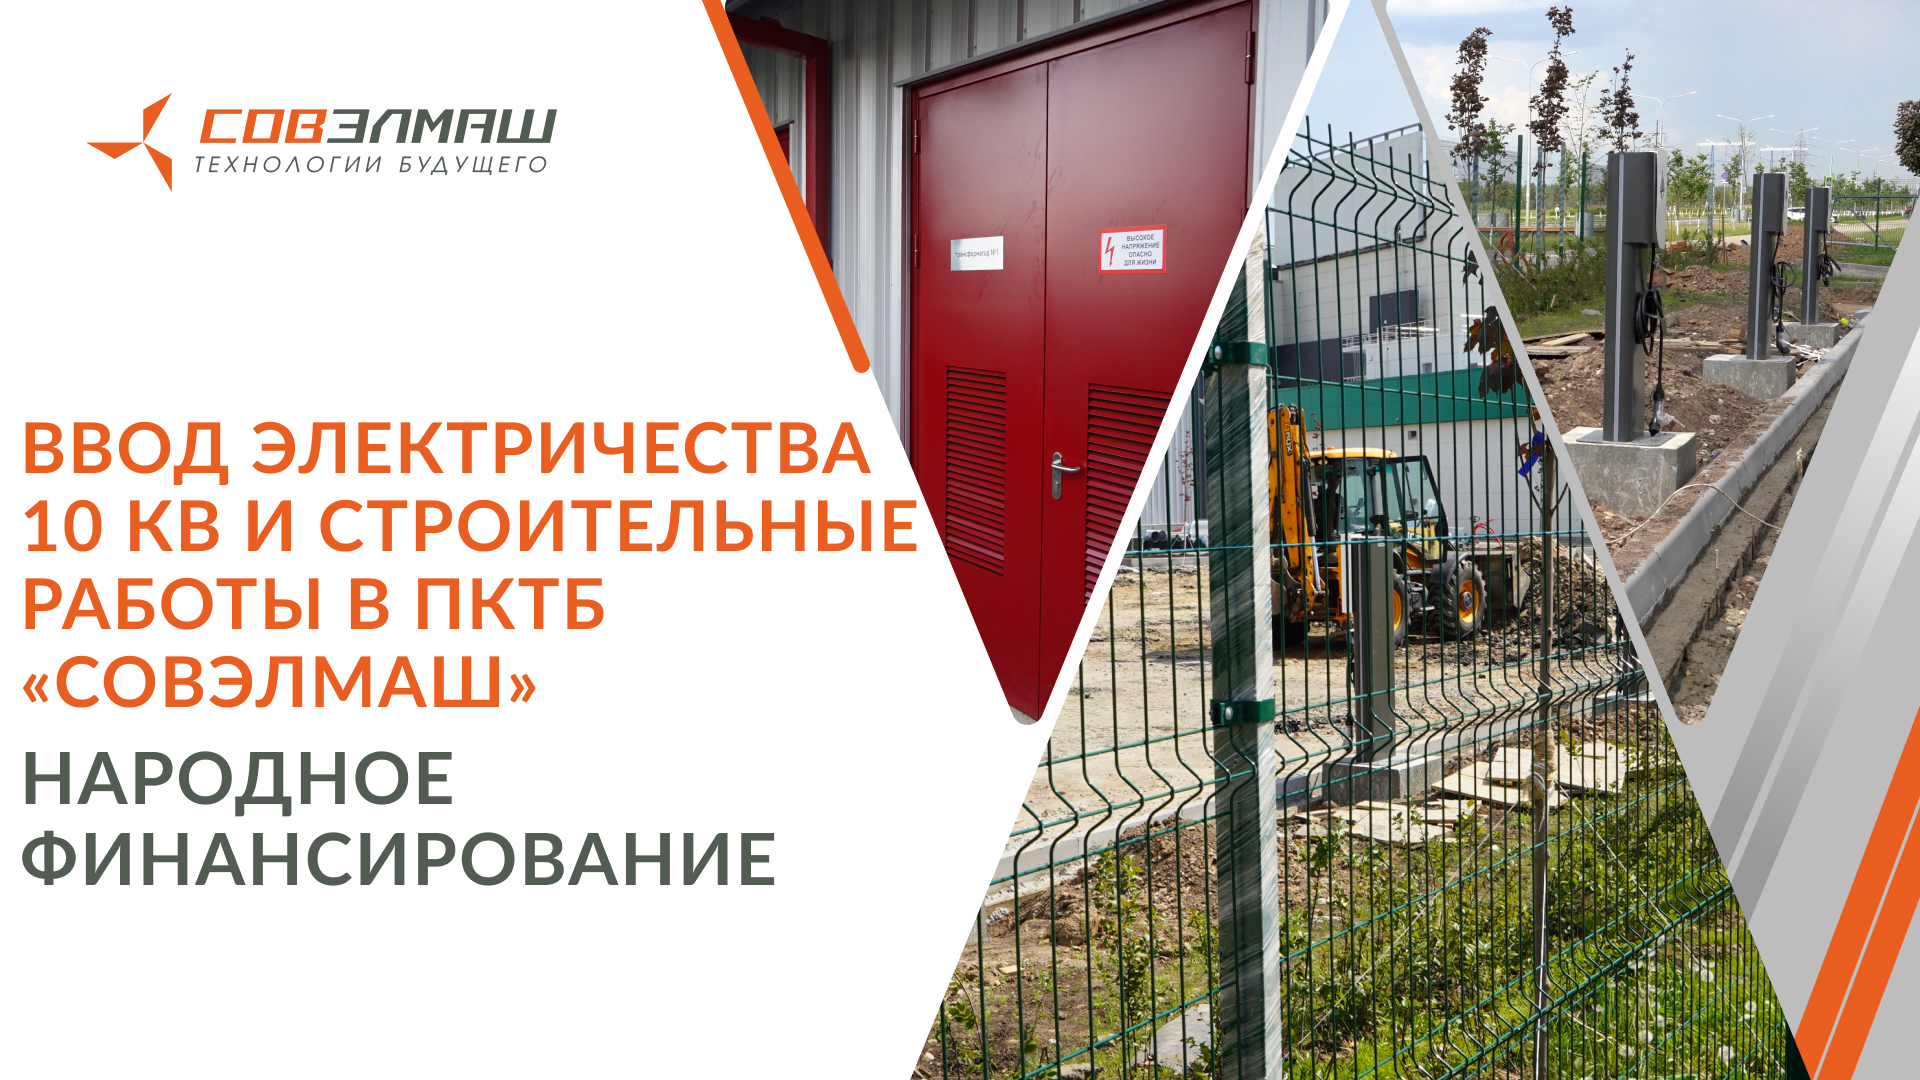 Ввод электричества 10 кВ и строительные работы в ПКТБ «Совэлмаш» | Народное финансирование